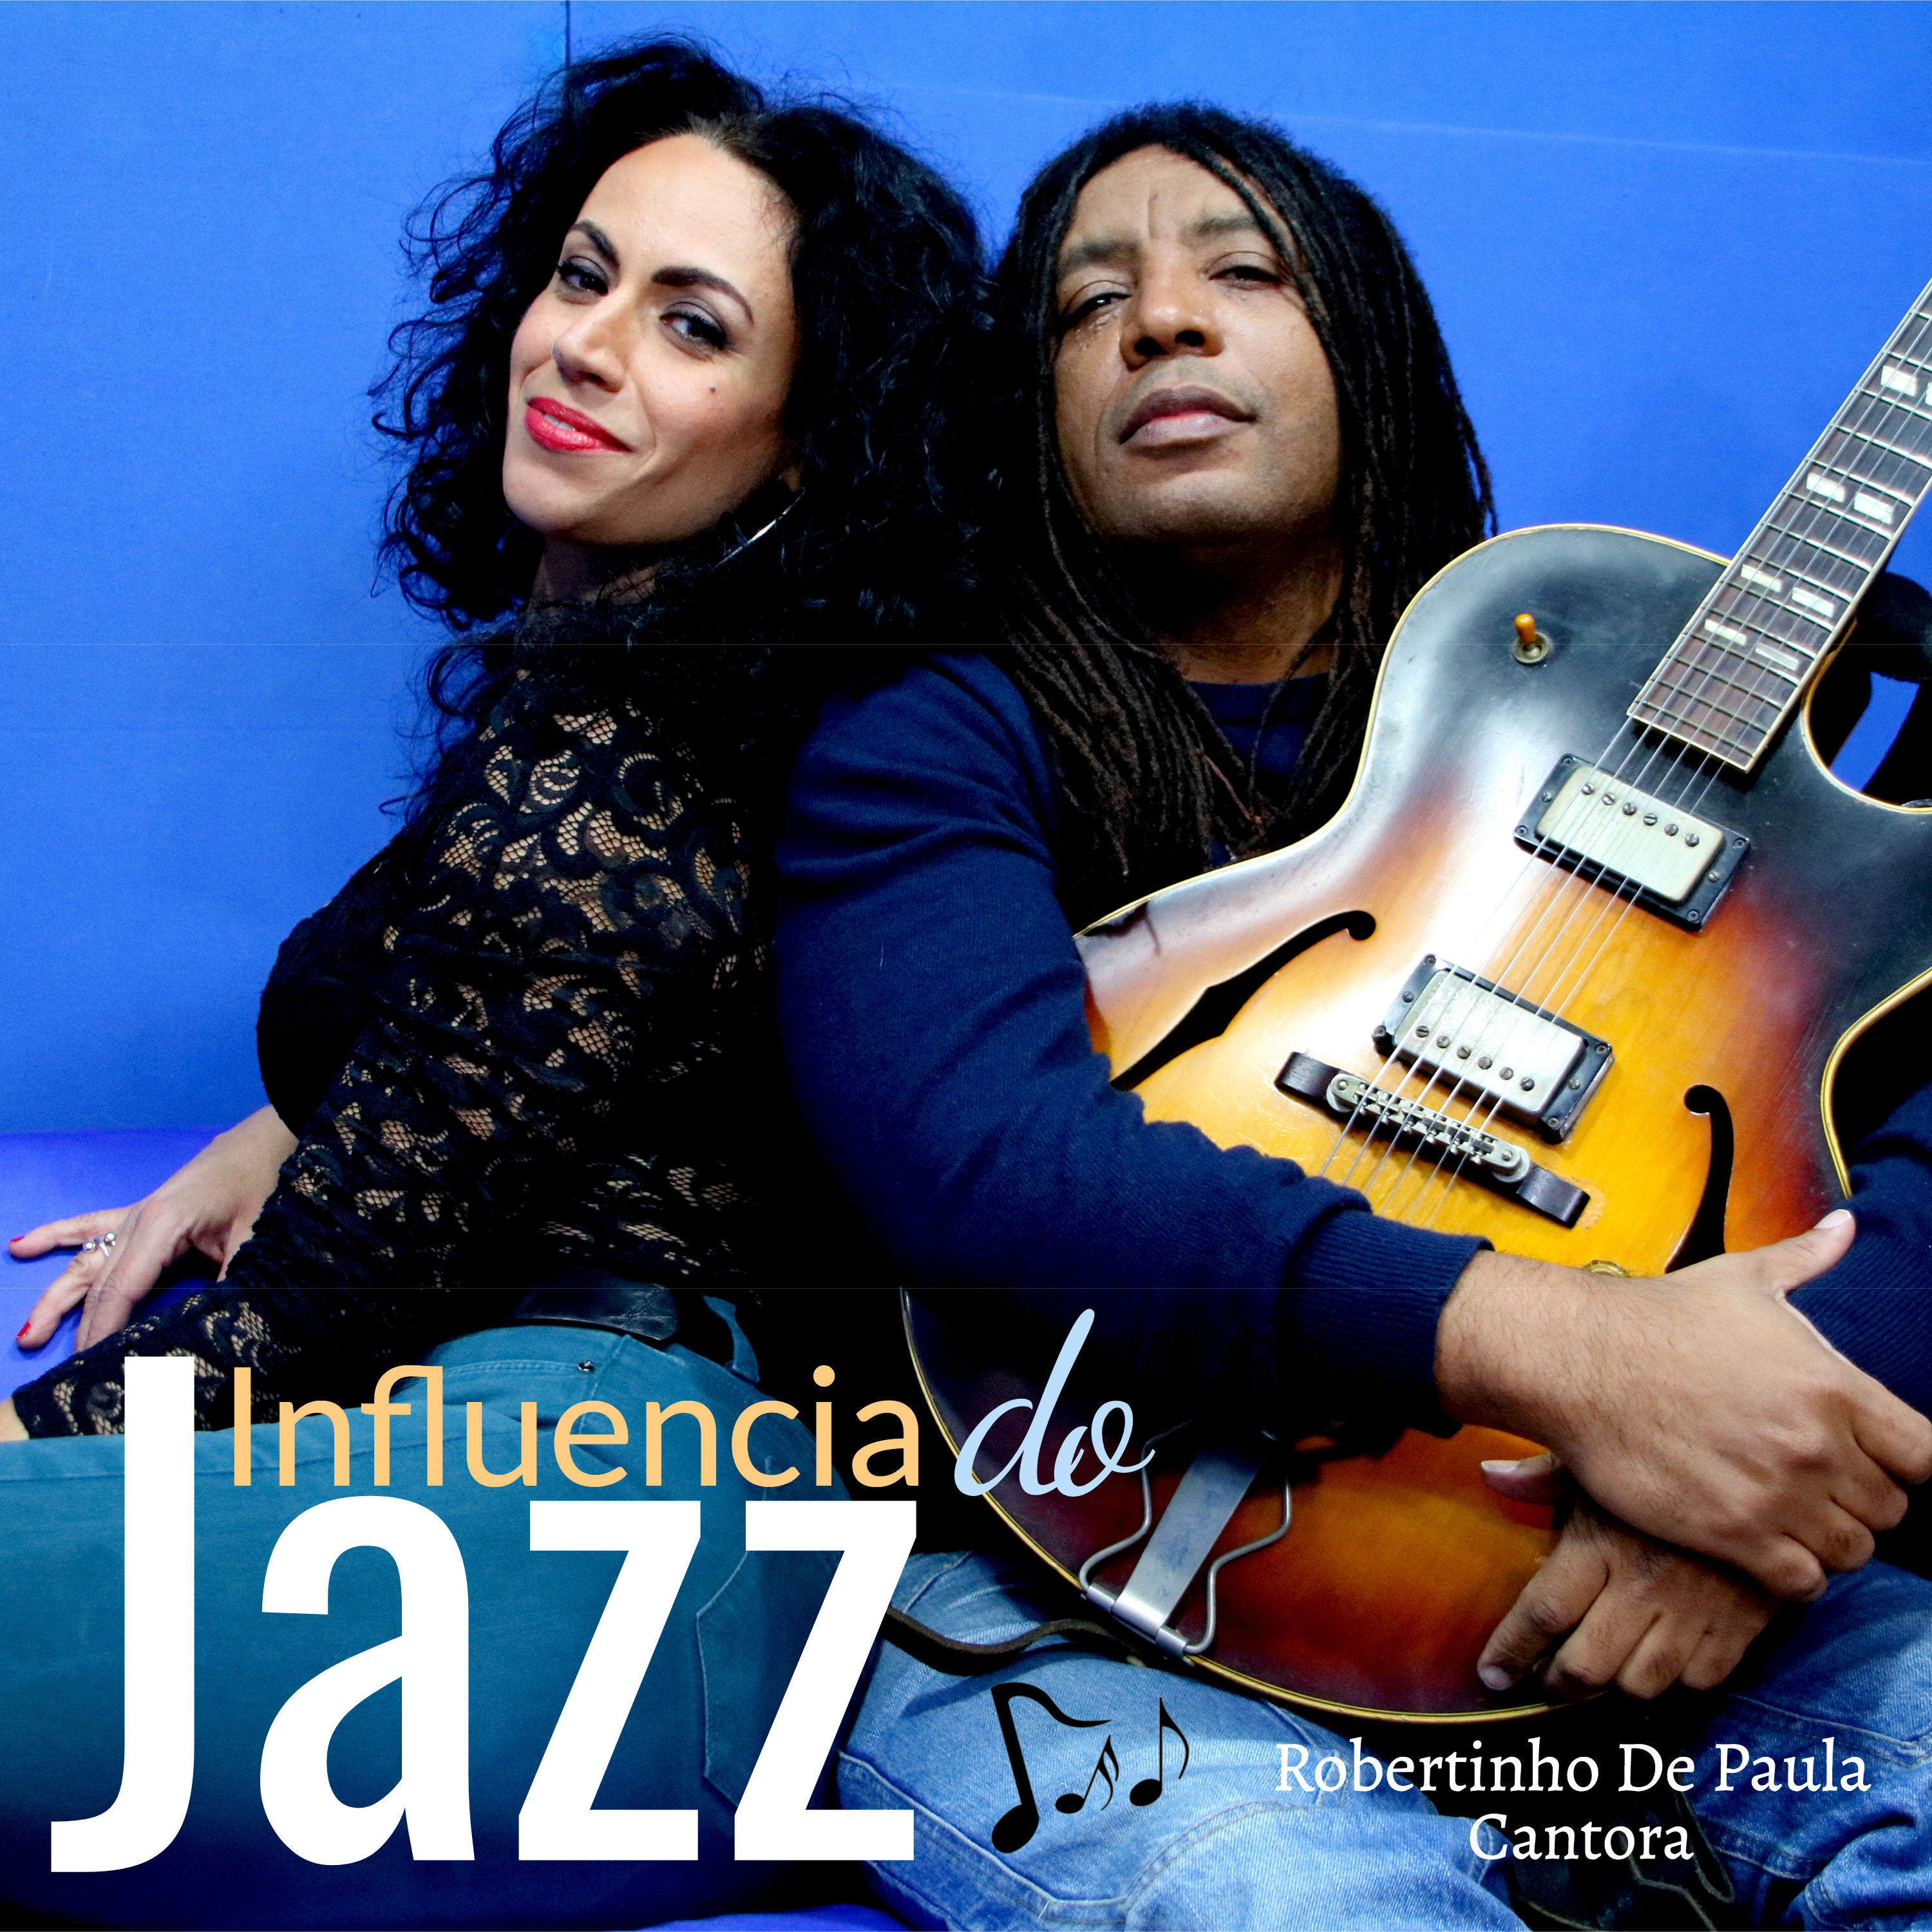 Robertinho De Paula – Influencia do jazz (2020) [FLAC 24bit/96kHz]